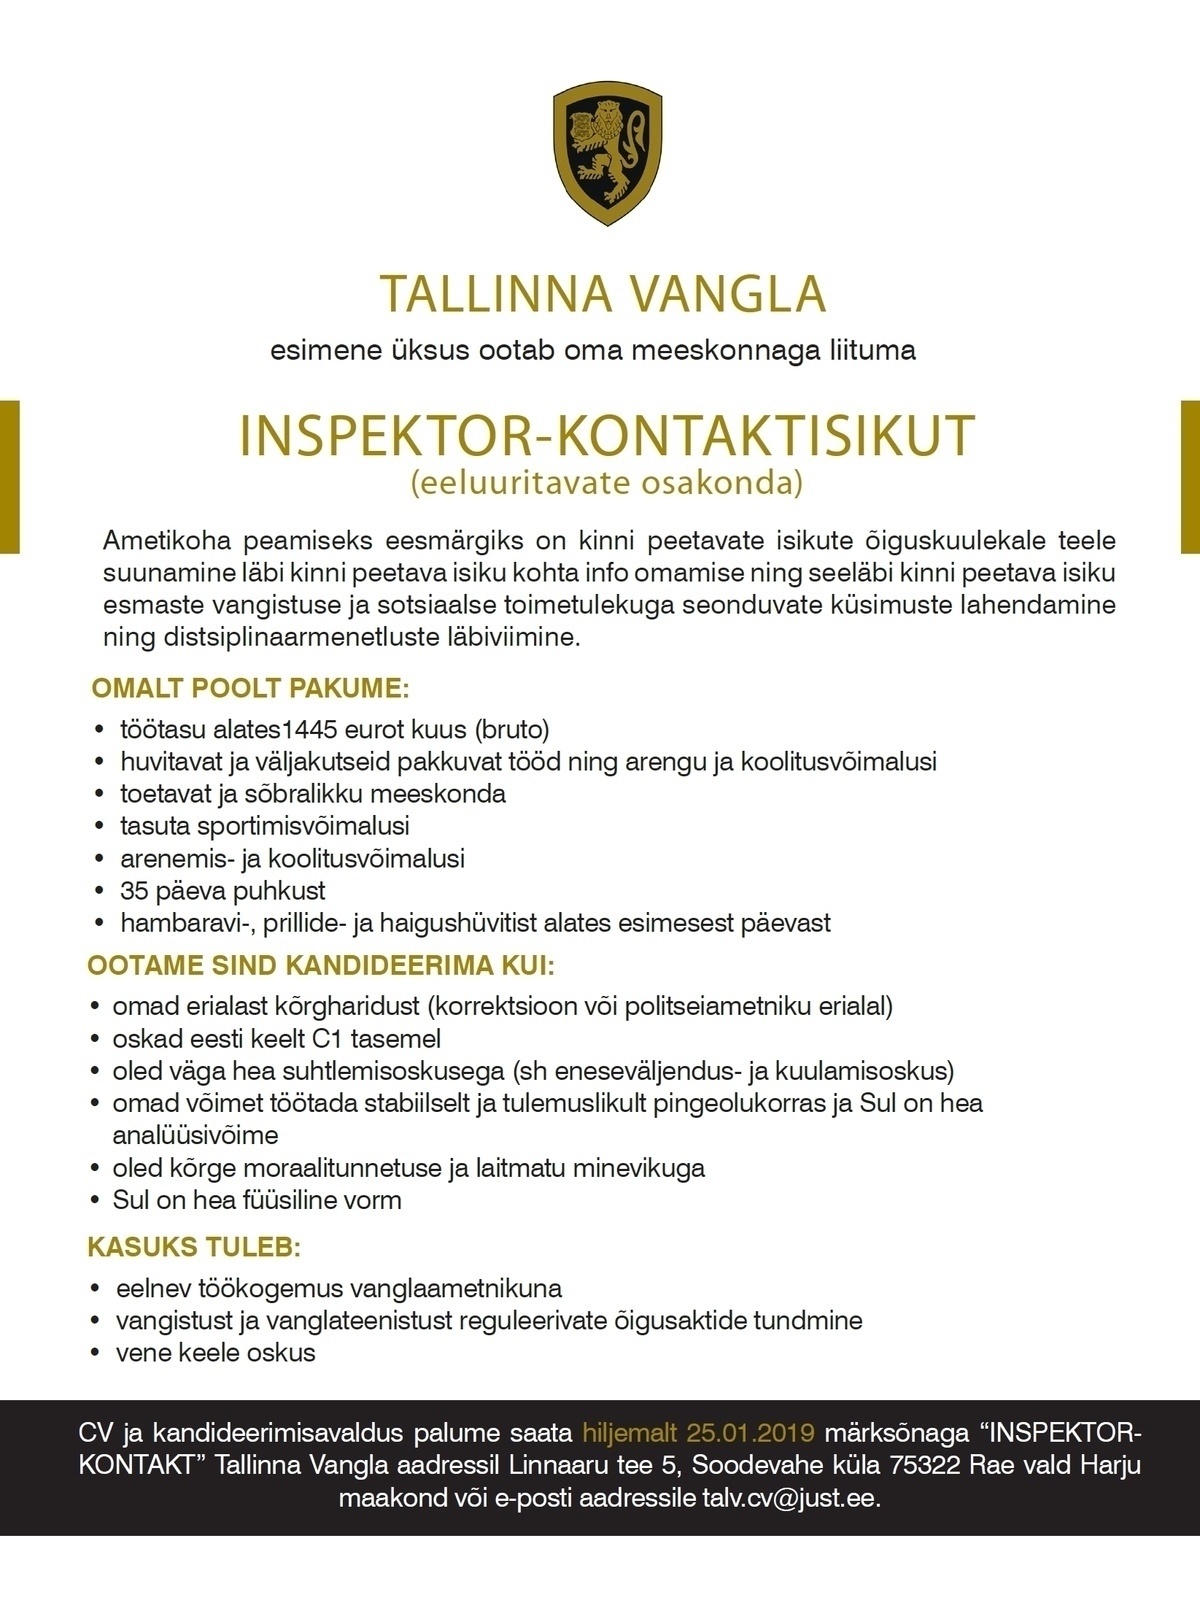 Tallinna Vangla Inspektor-kontaktisik (eeluuritavate osakonda)